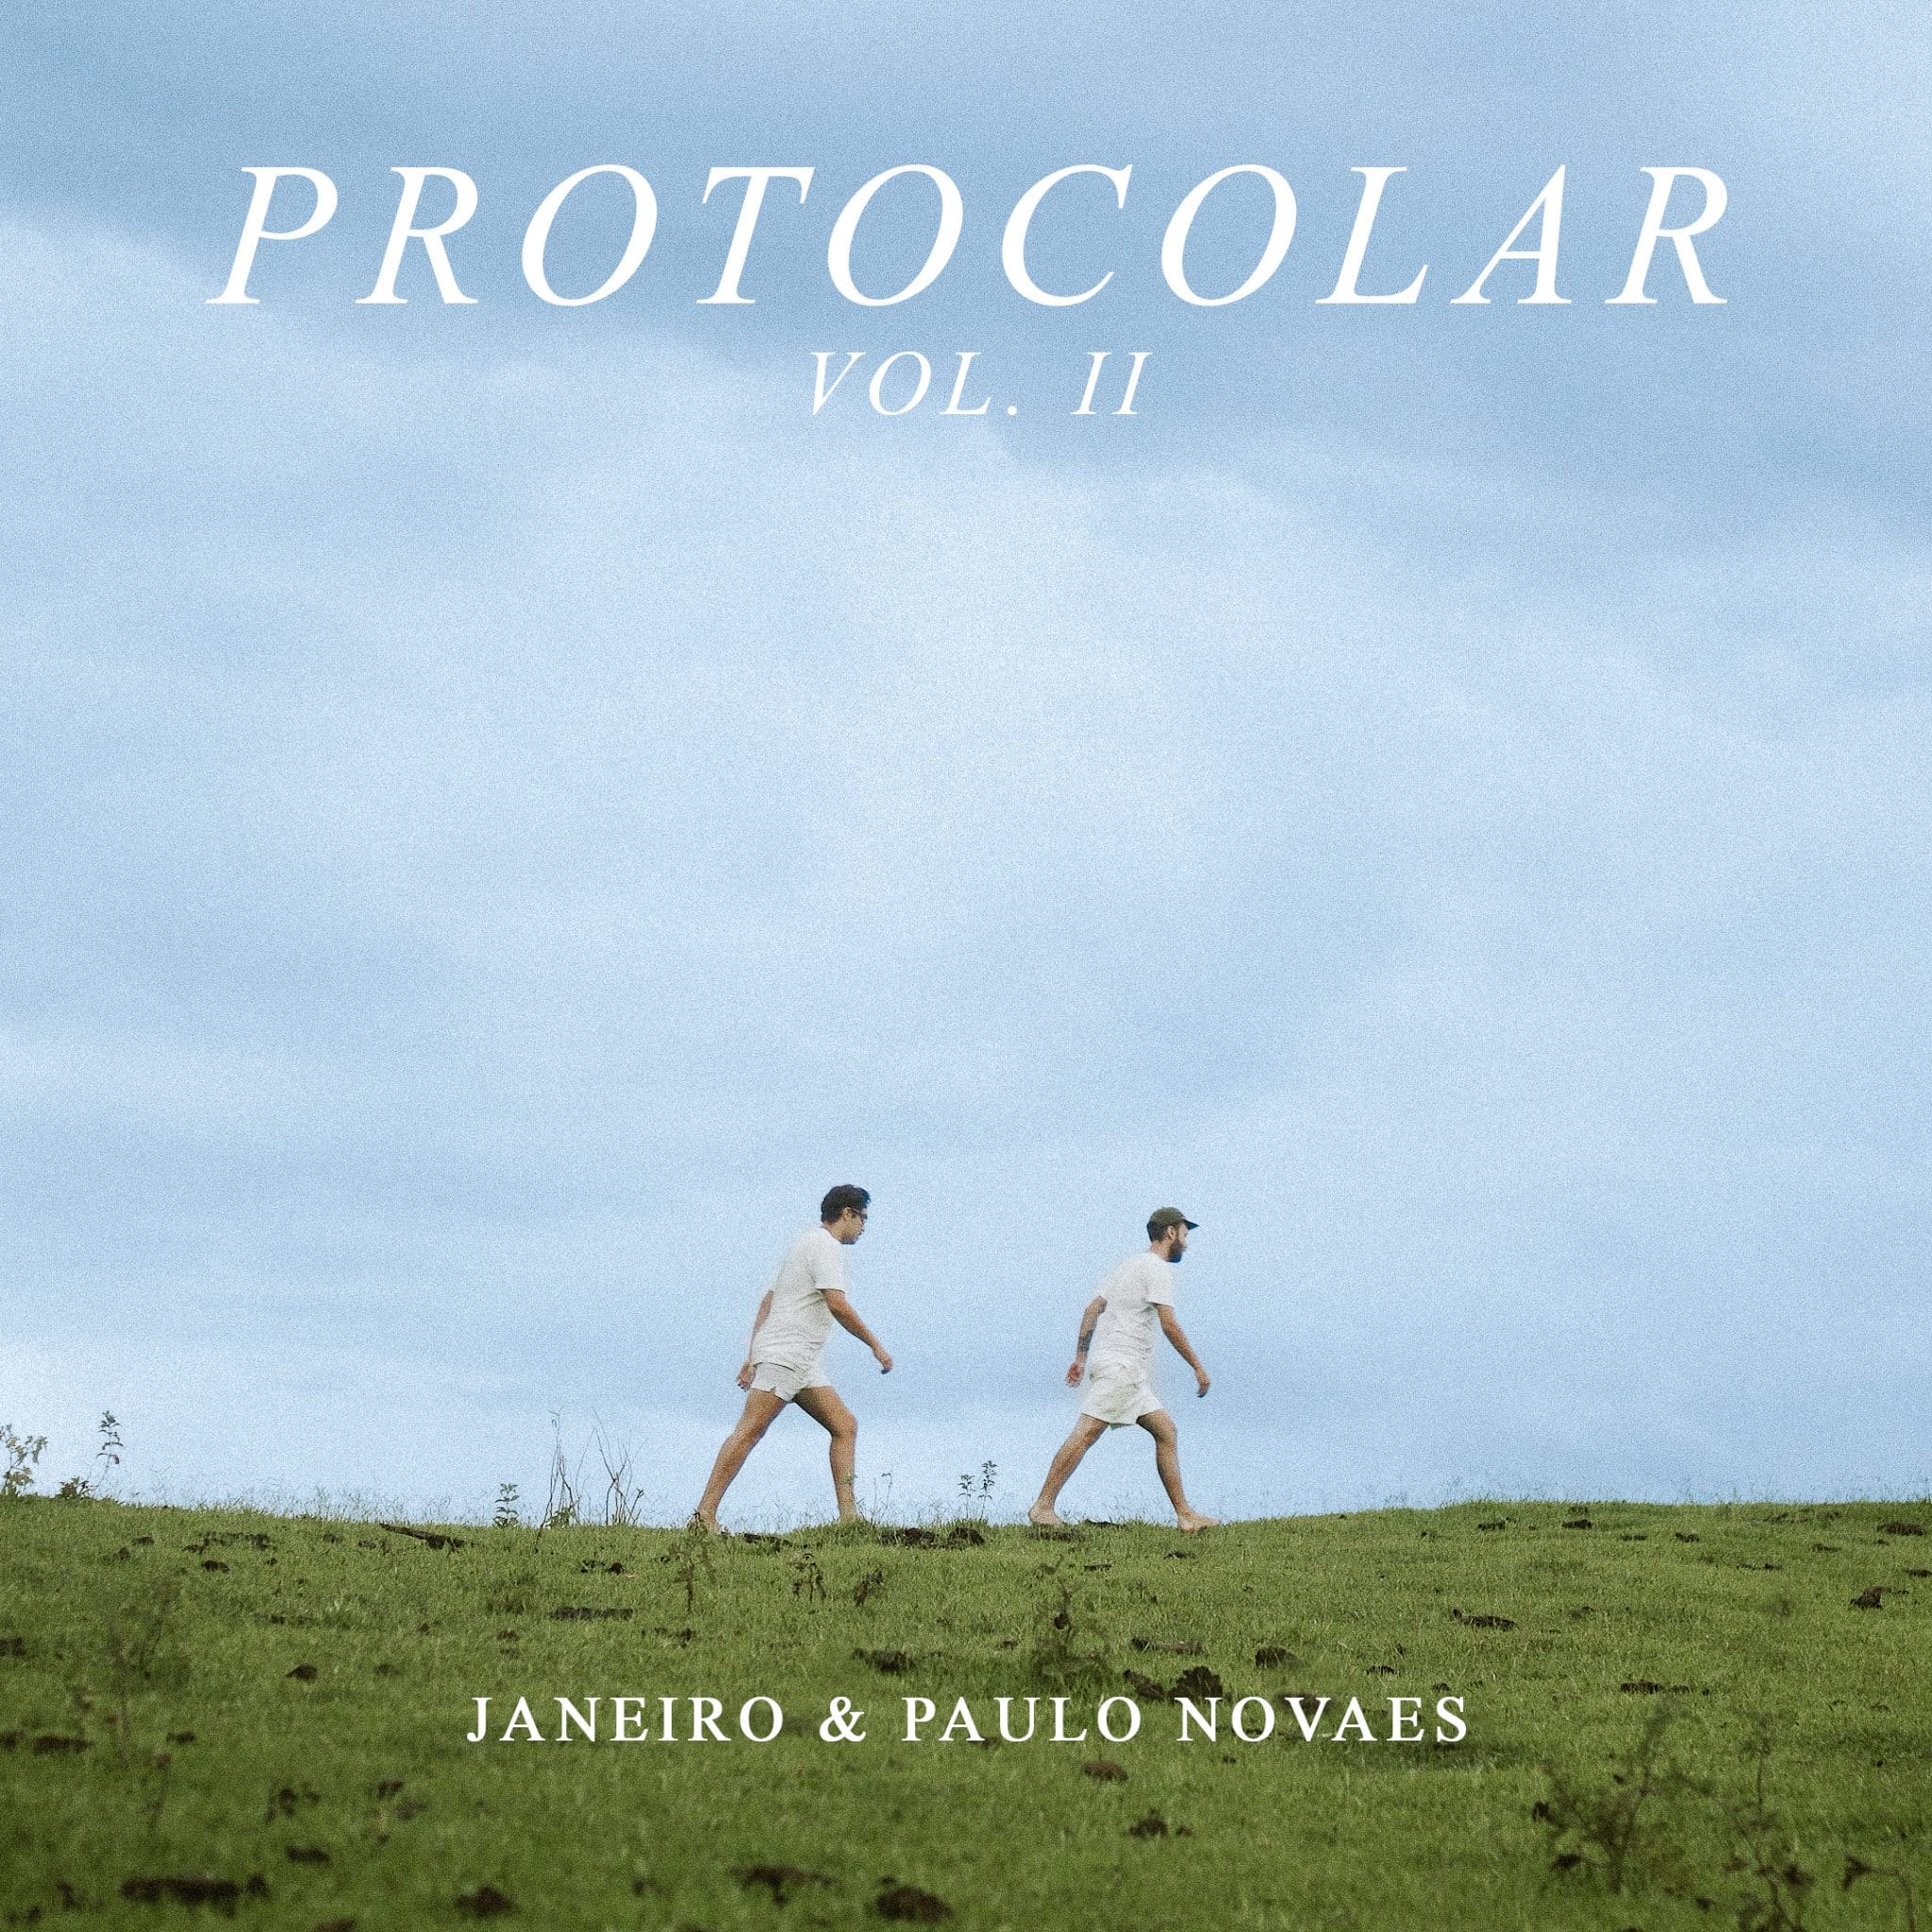 revistaprosaversoearte.com - Janeiro e Paulo Novaes lançam disco 'Protocolar Vol. II'